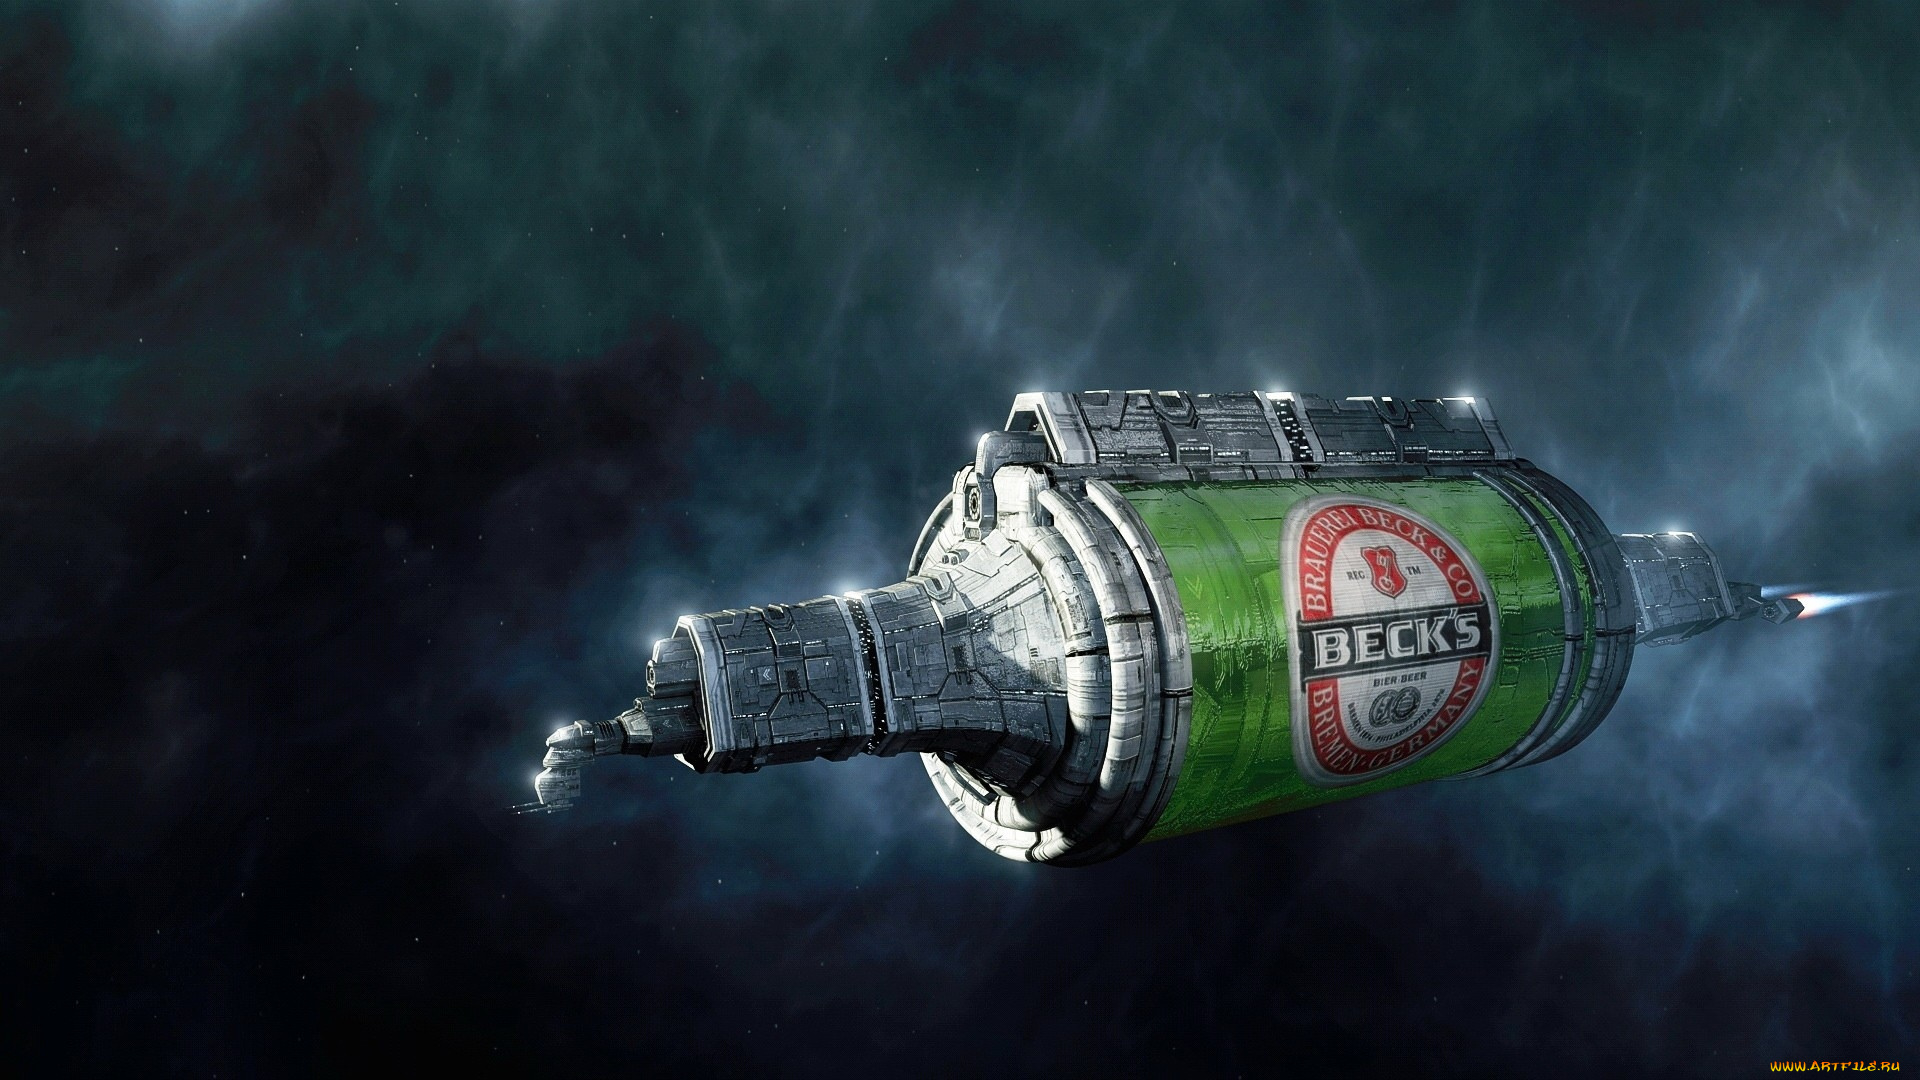 beck`s, бренды, пиво, космический, корабль, банка, реклама